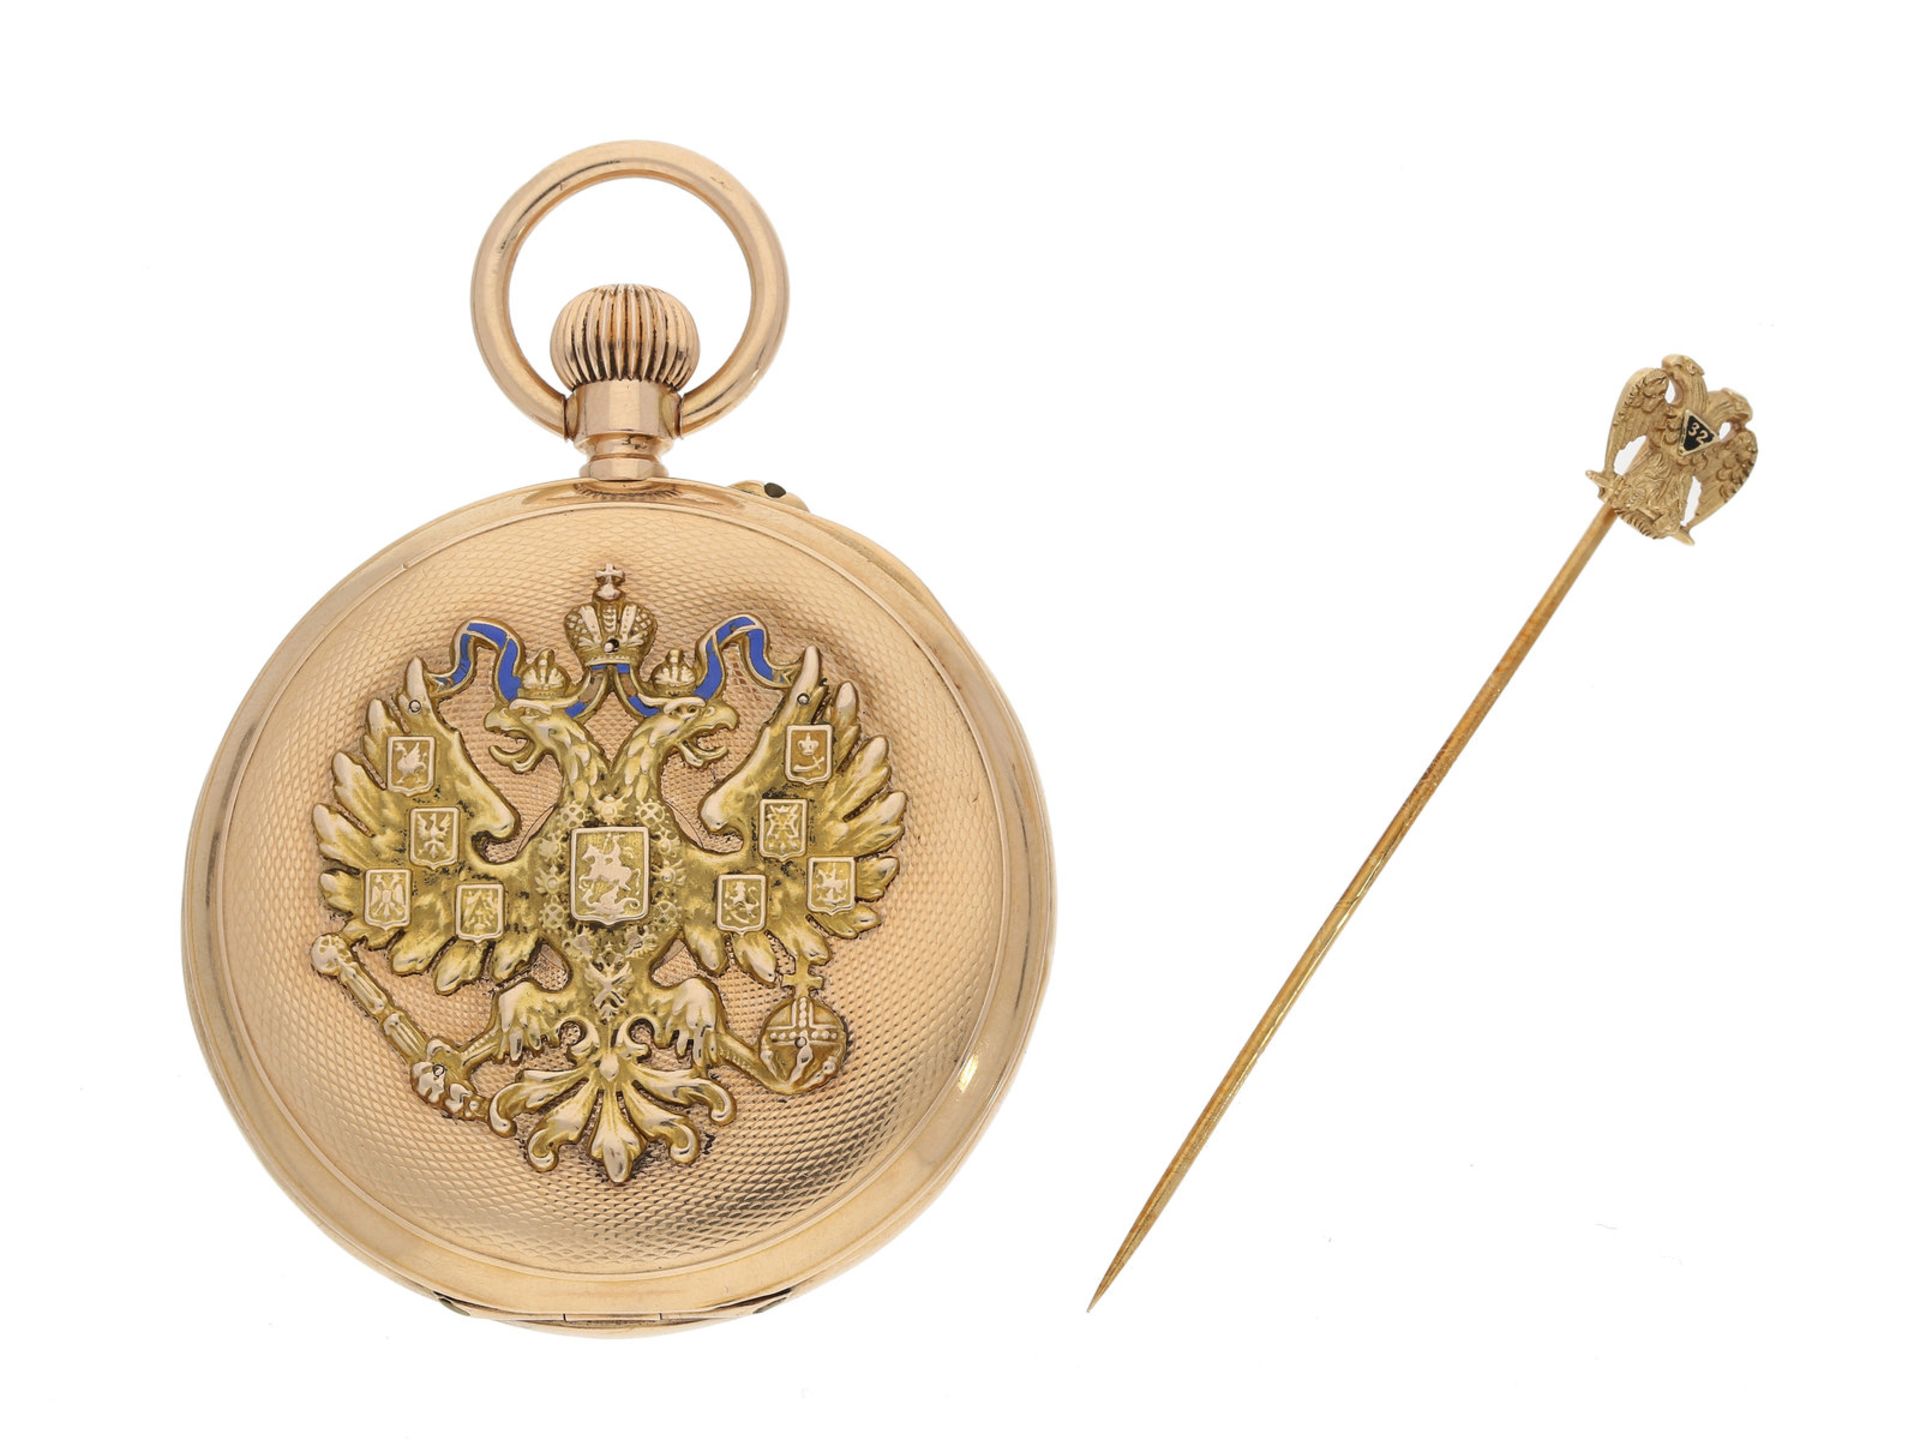 Taschenuhr: außergewöhnliche Gold/Emaille-Taschenuhr mit rückseitigem Zaren-Adler und Zodiak-